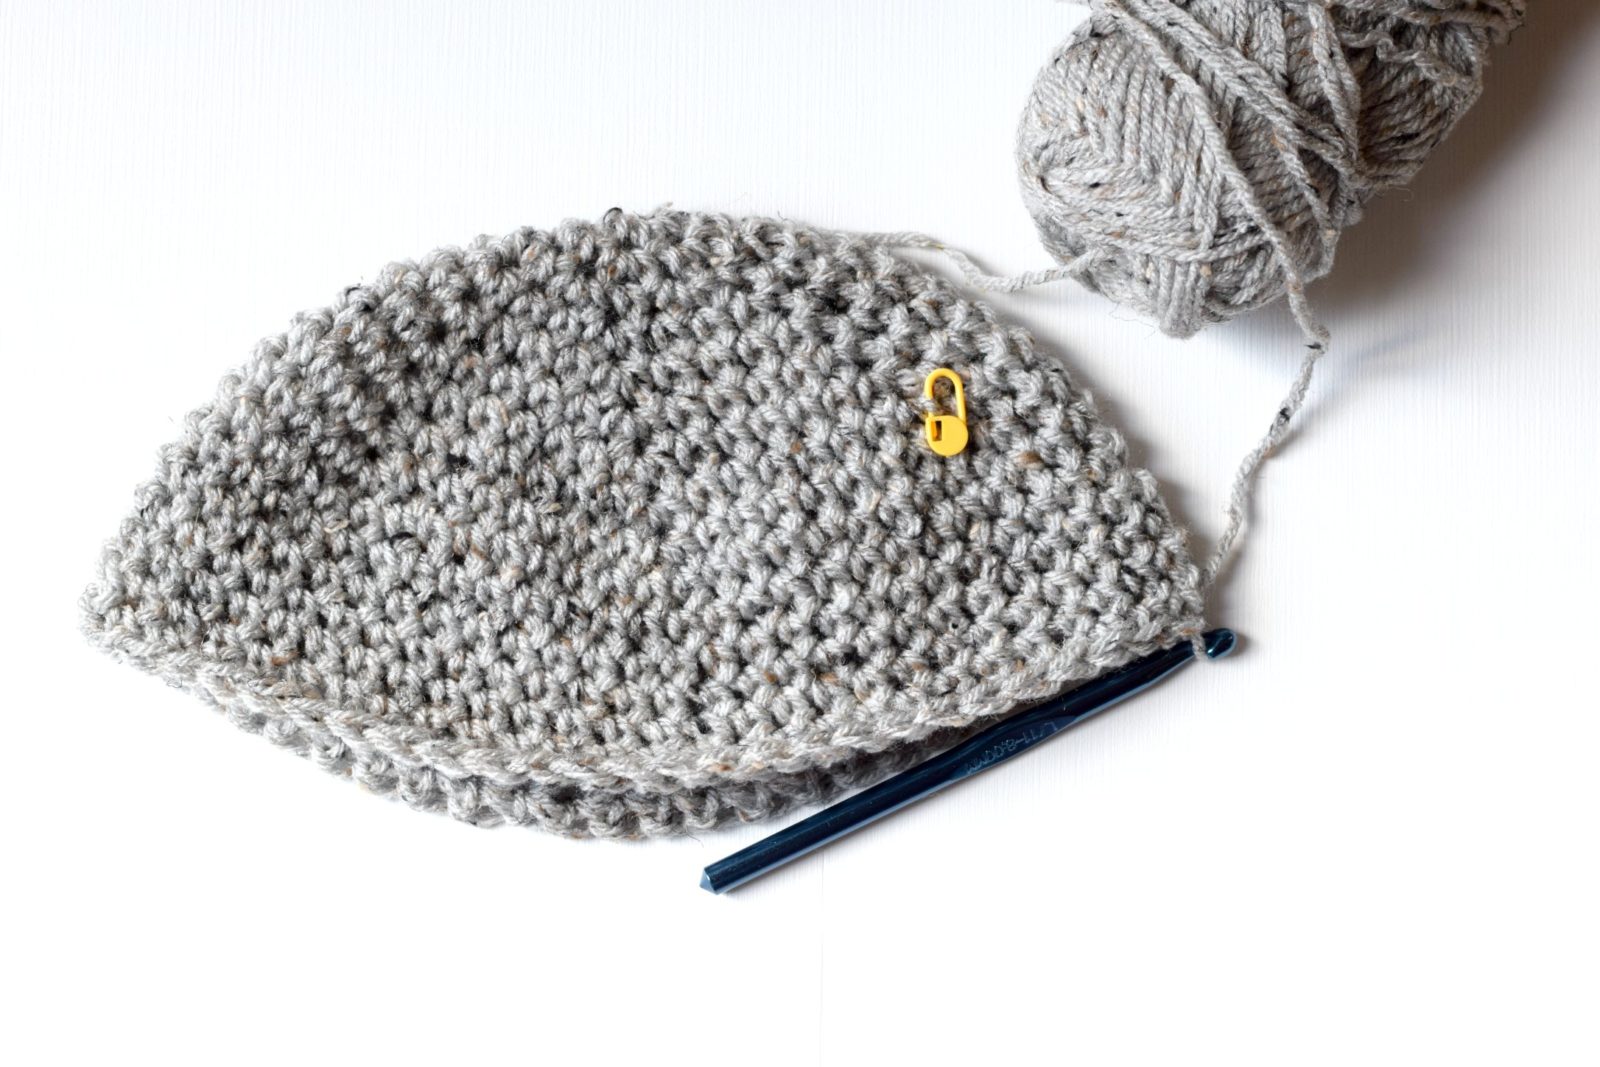  Ripples Crochet Beanie / Slouch Hat Pattern: Crochet